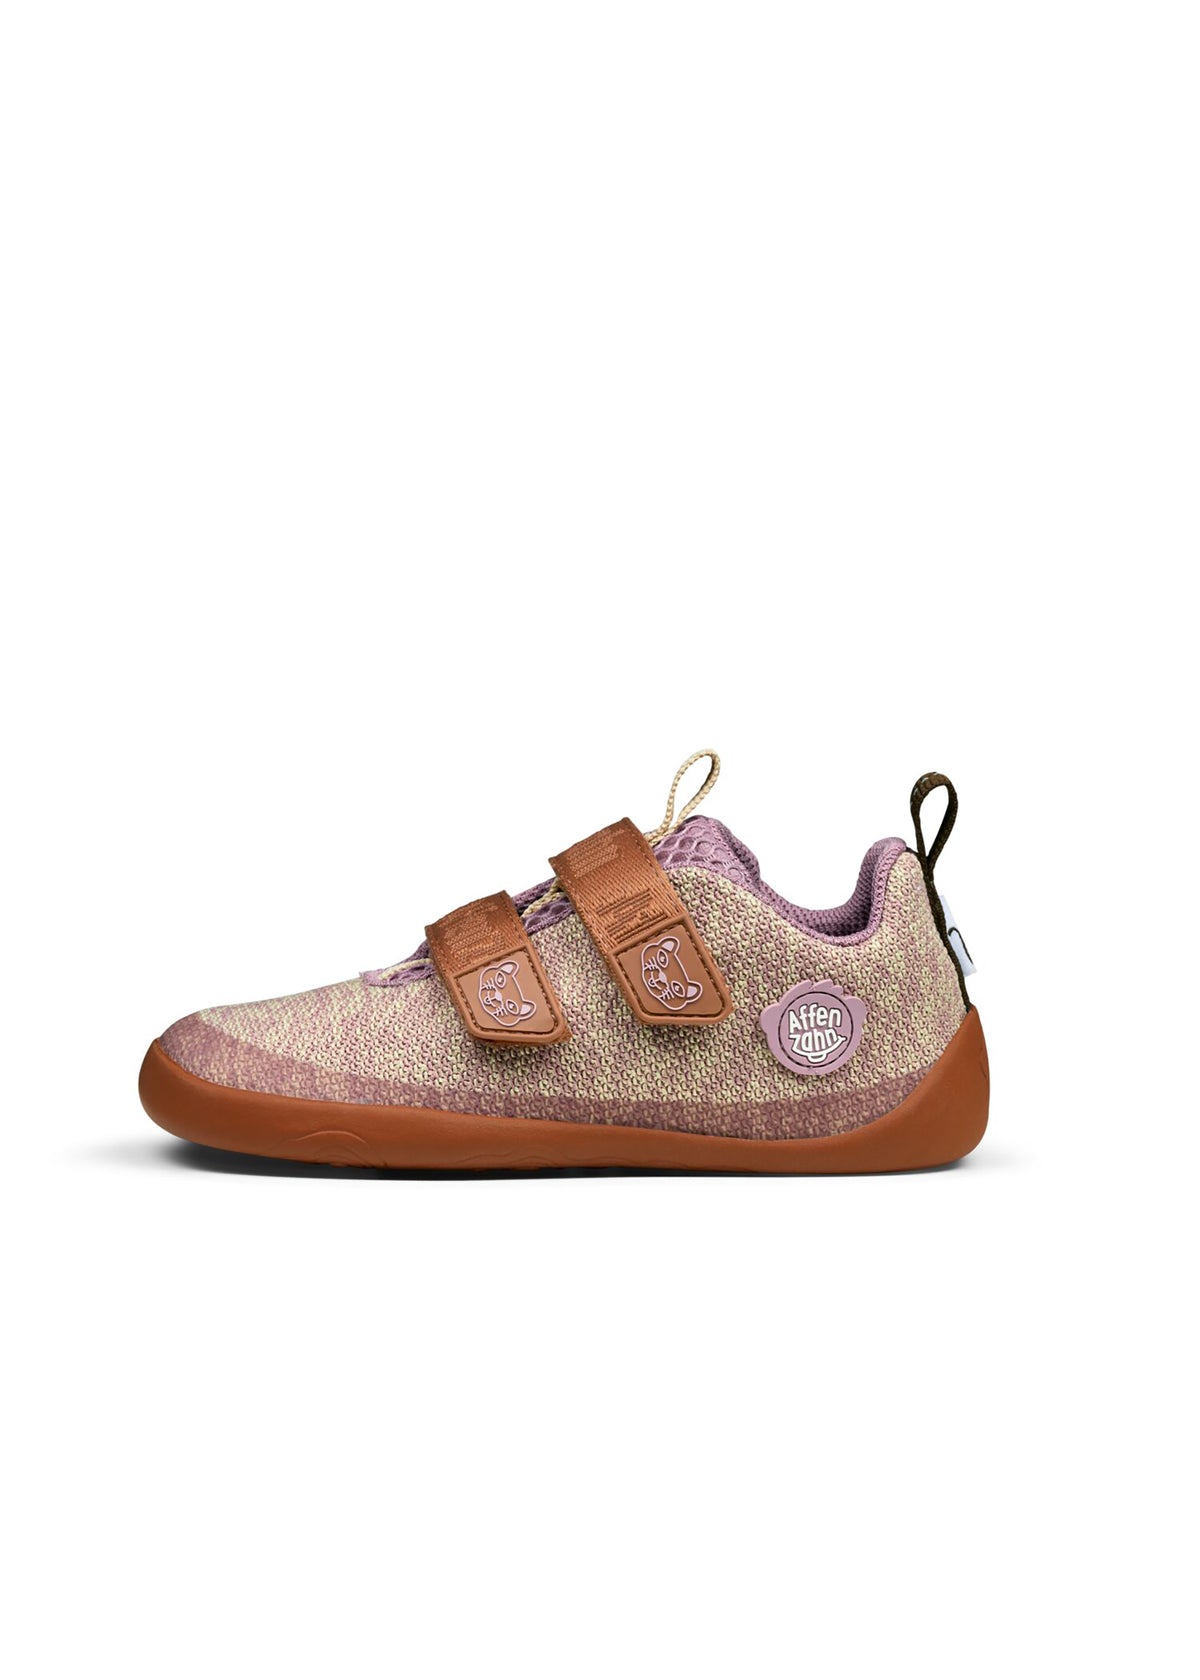 Children's Cat barefoot sneakers - Sneaker Knit Happy, beige-brown-purple, vegan